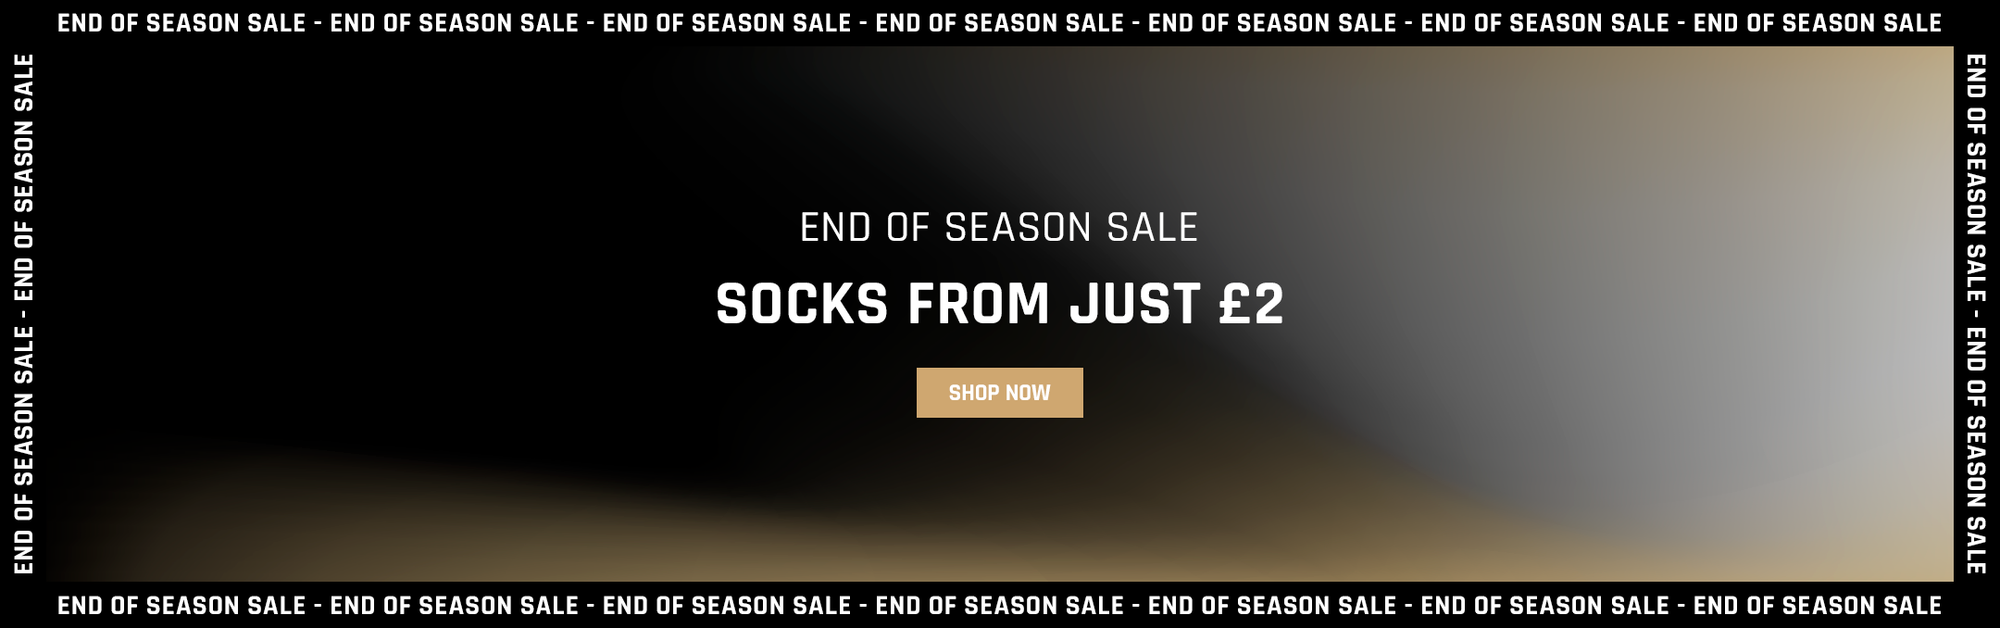 End of Season Sale - Shorts